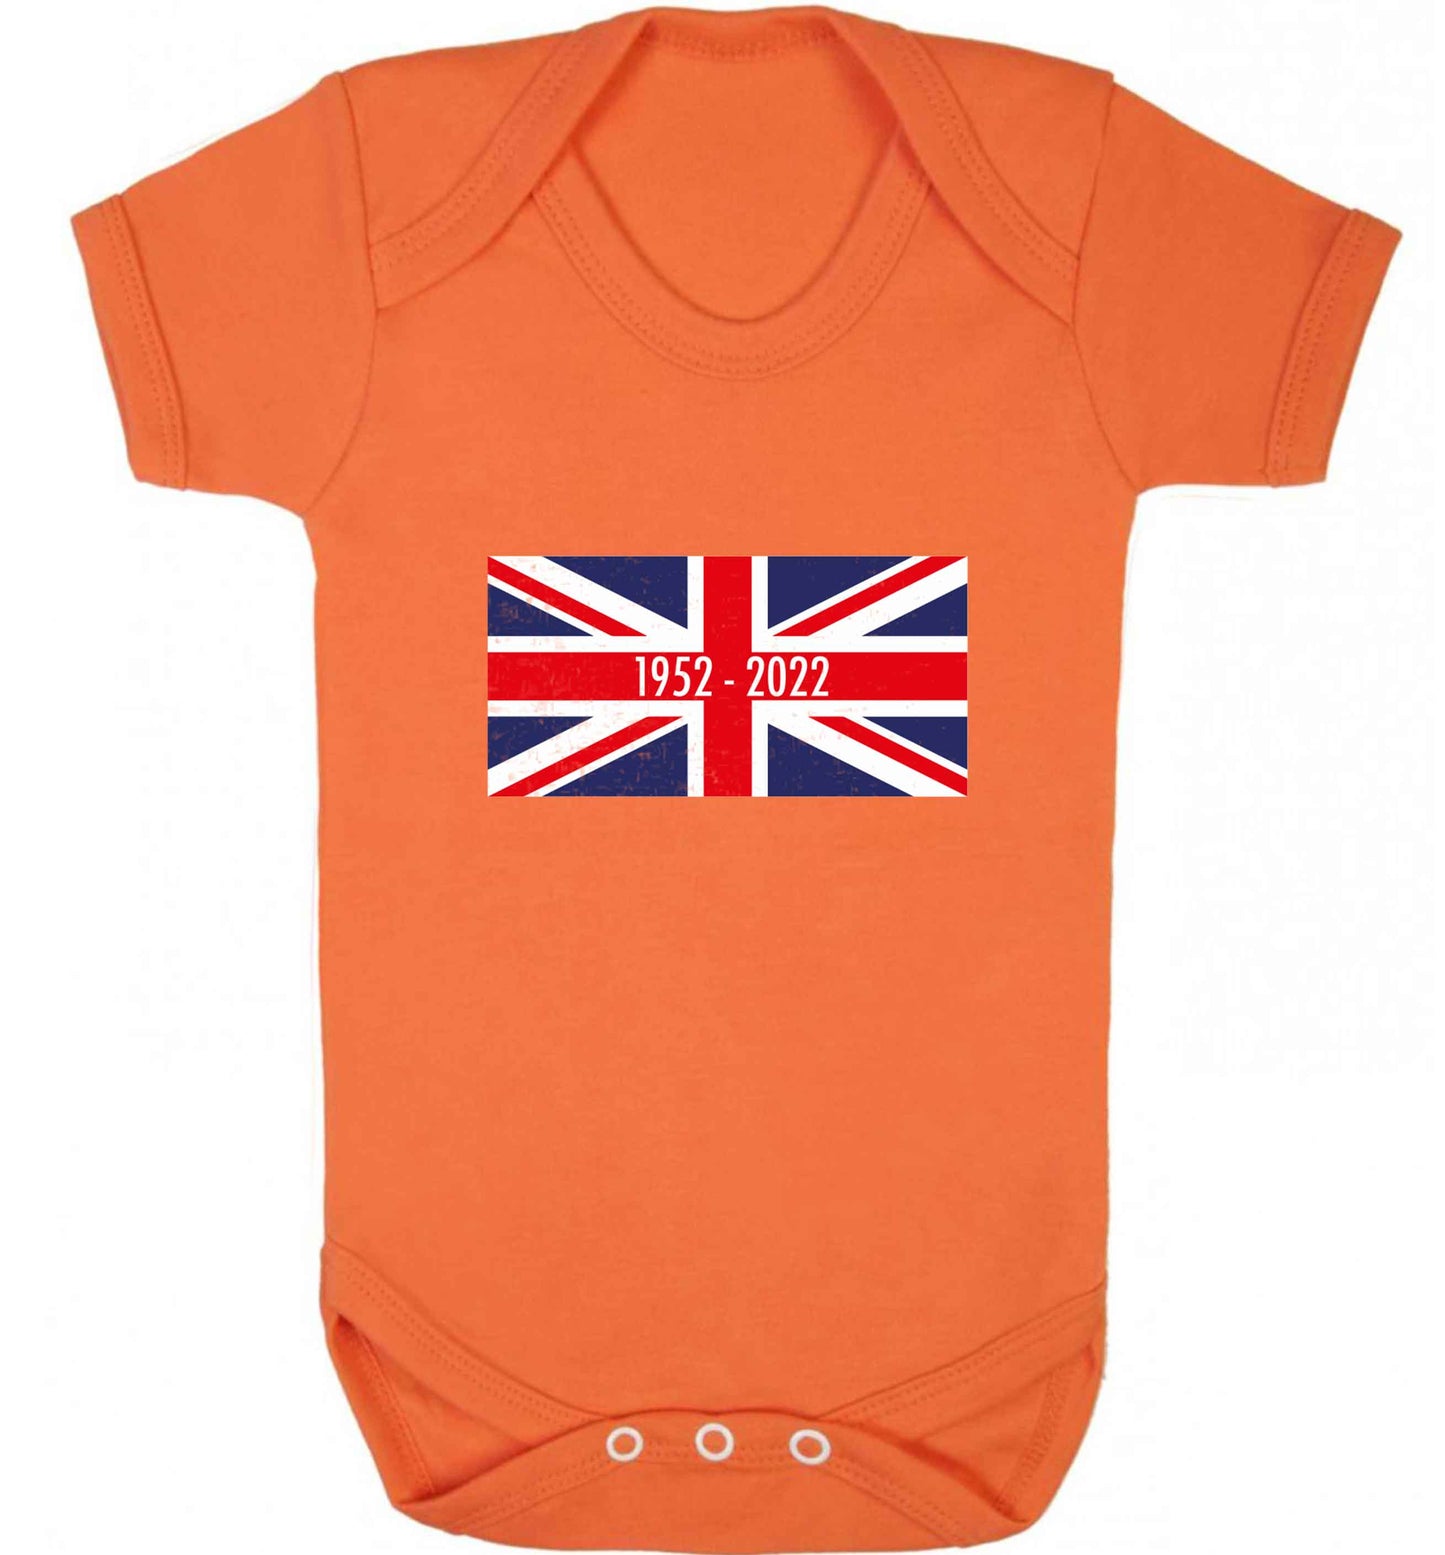 British flag Queens jubilee baby vest orange 18-24 months